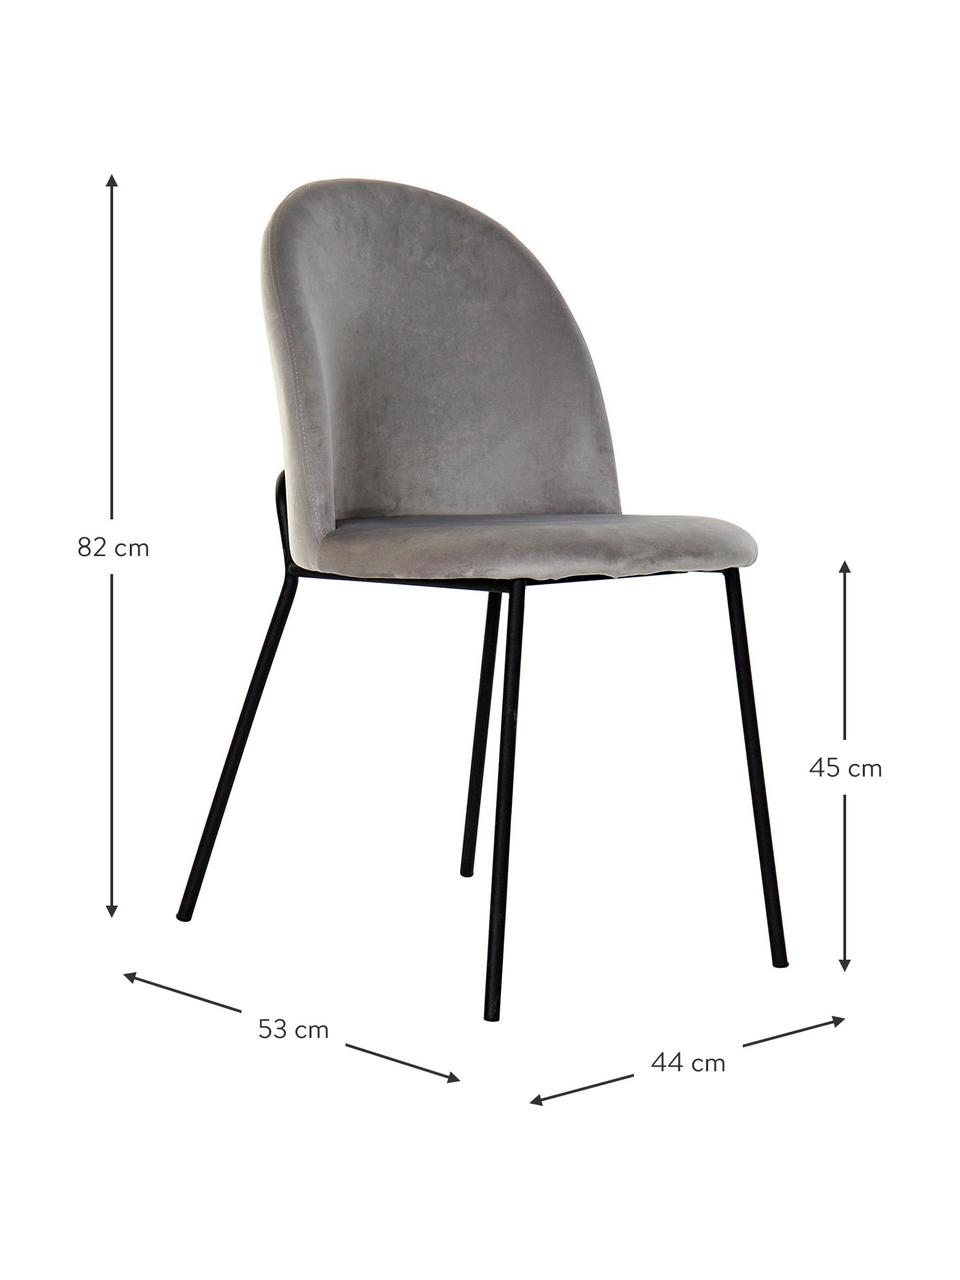 Krzesło tapicerowane z aksamitu Carl, Tapicerka: 100% aksamit poliestrowy, Nogi: metal powlekany, Jasny szary, S 44 x G 53 cm